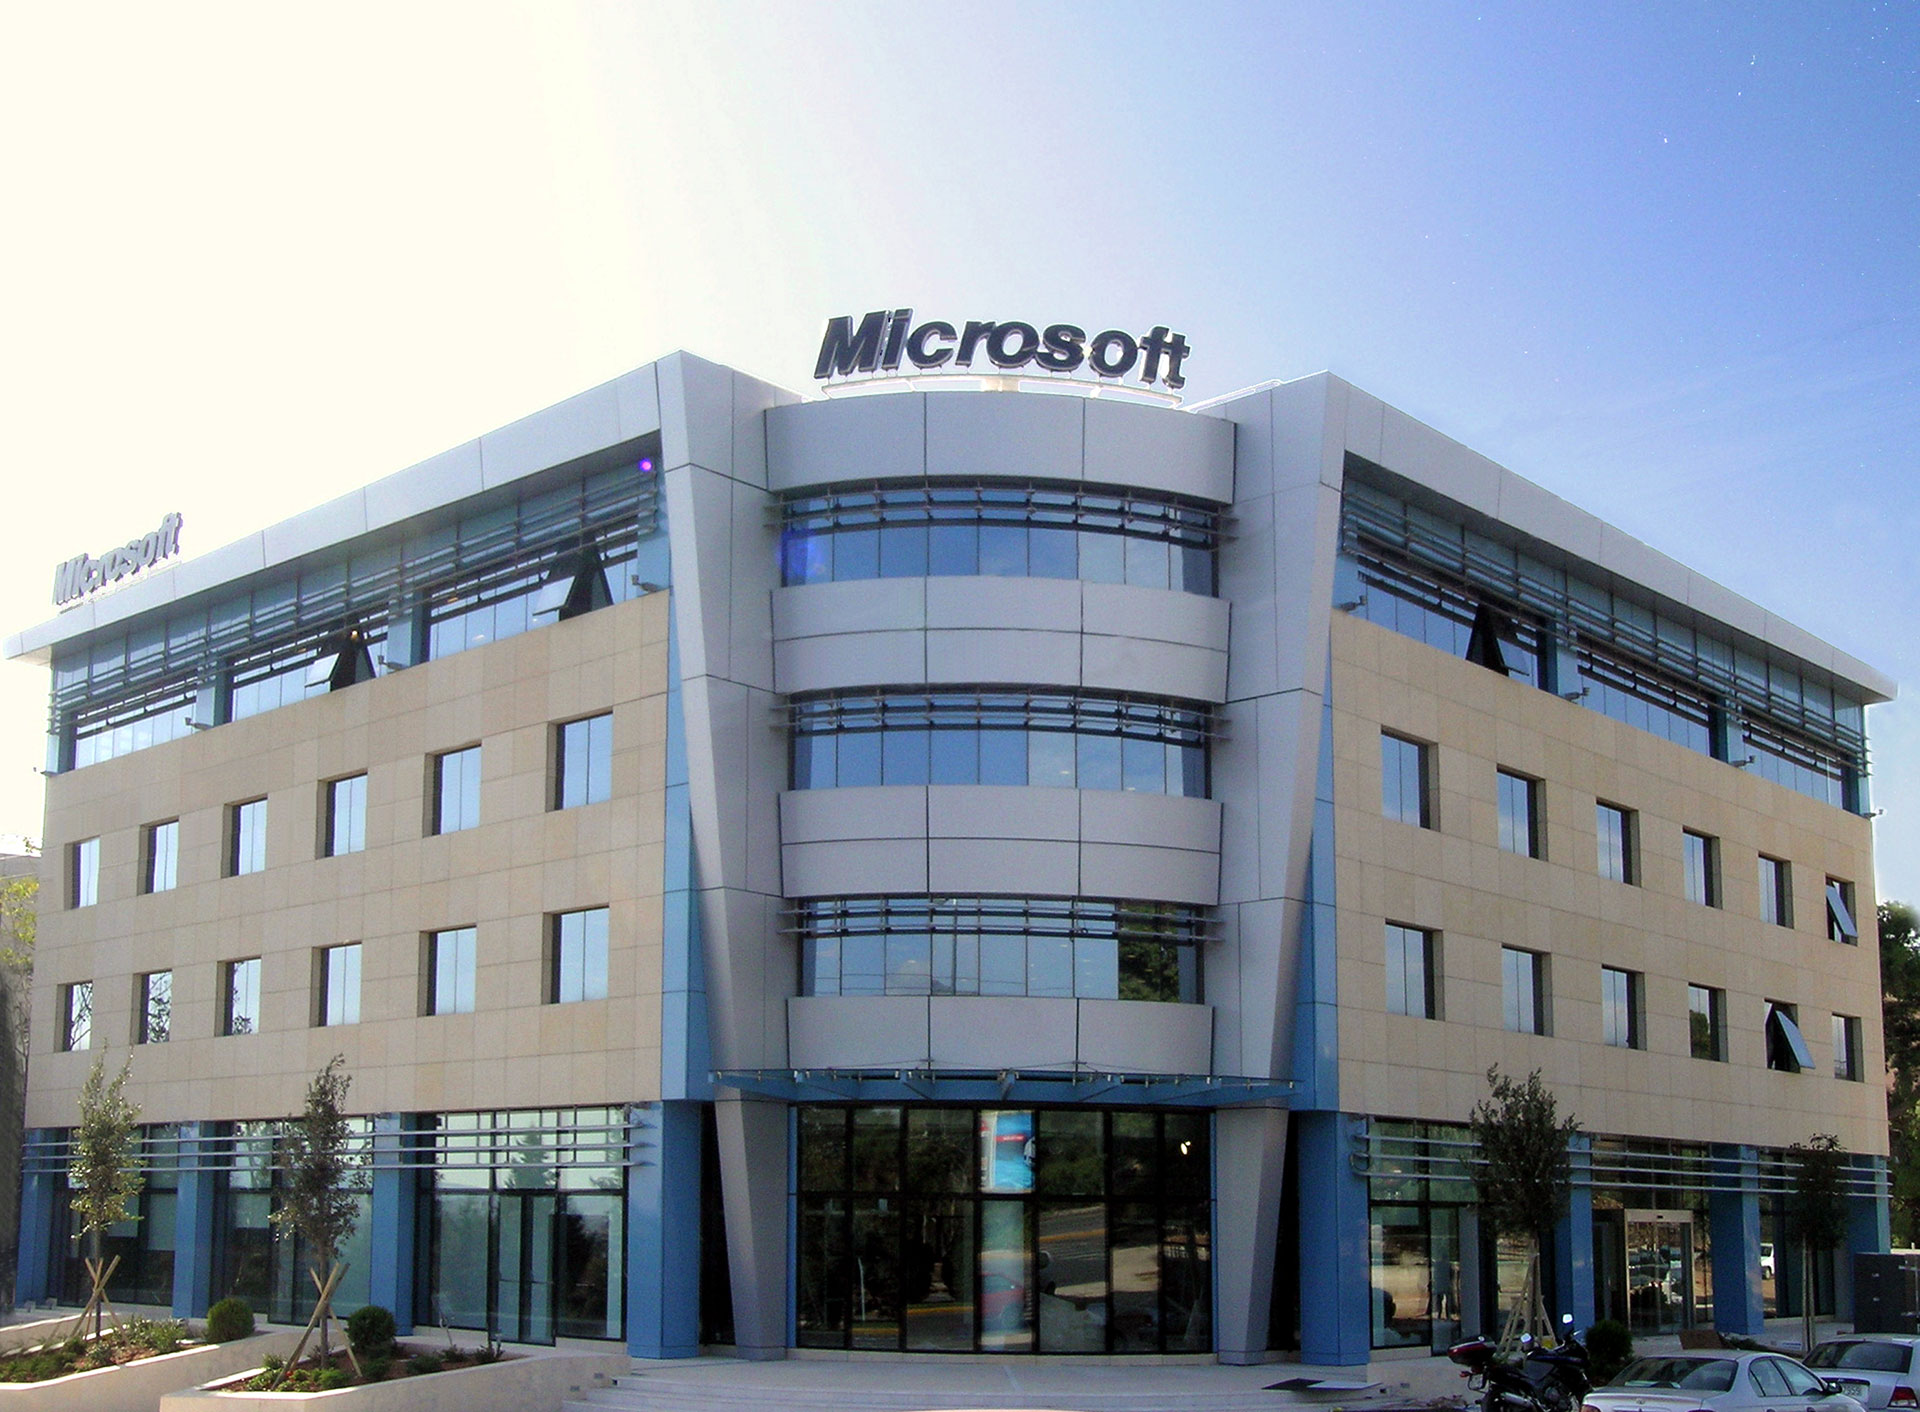 Ξεχασμένος σάκος ήταν το… ύποπτο αντικείμενο έξω από τα γραφεία της Microsoft στο Μαρούσι